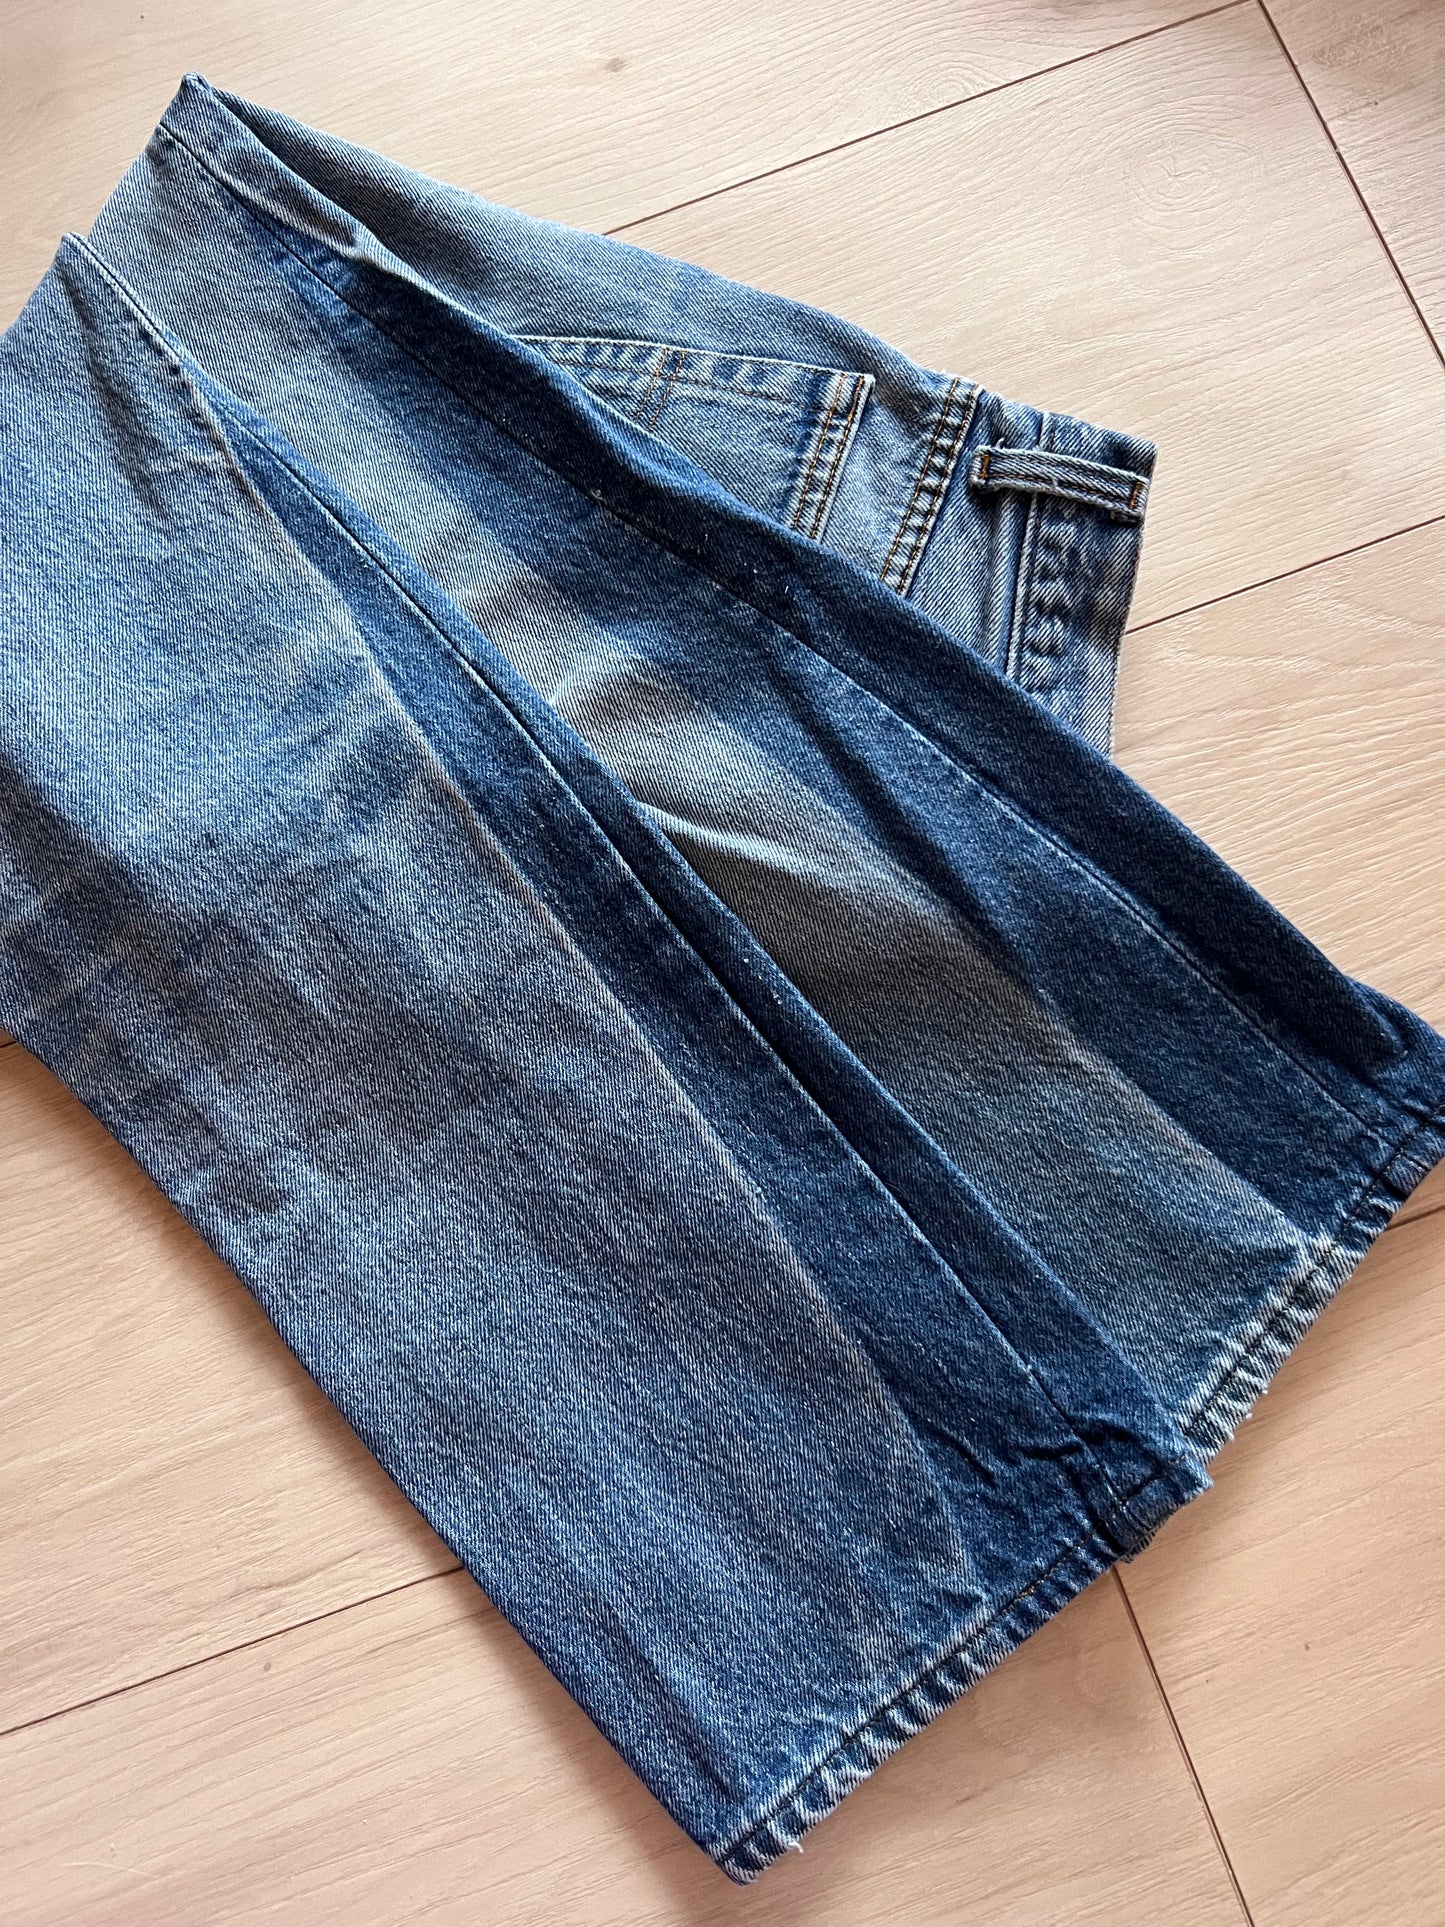 Size 25 Levi’s 501 jeans